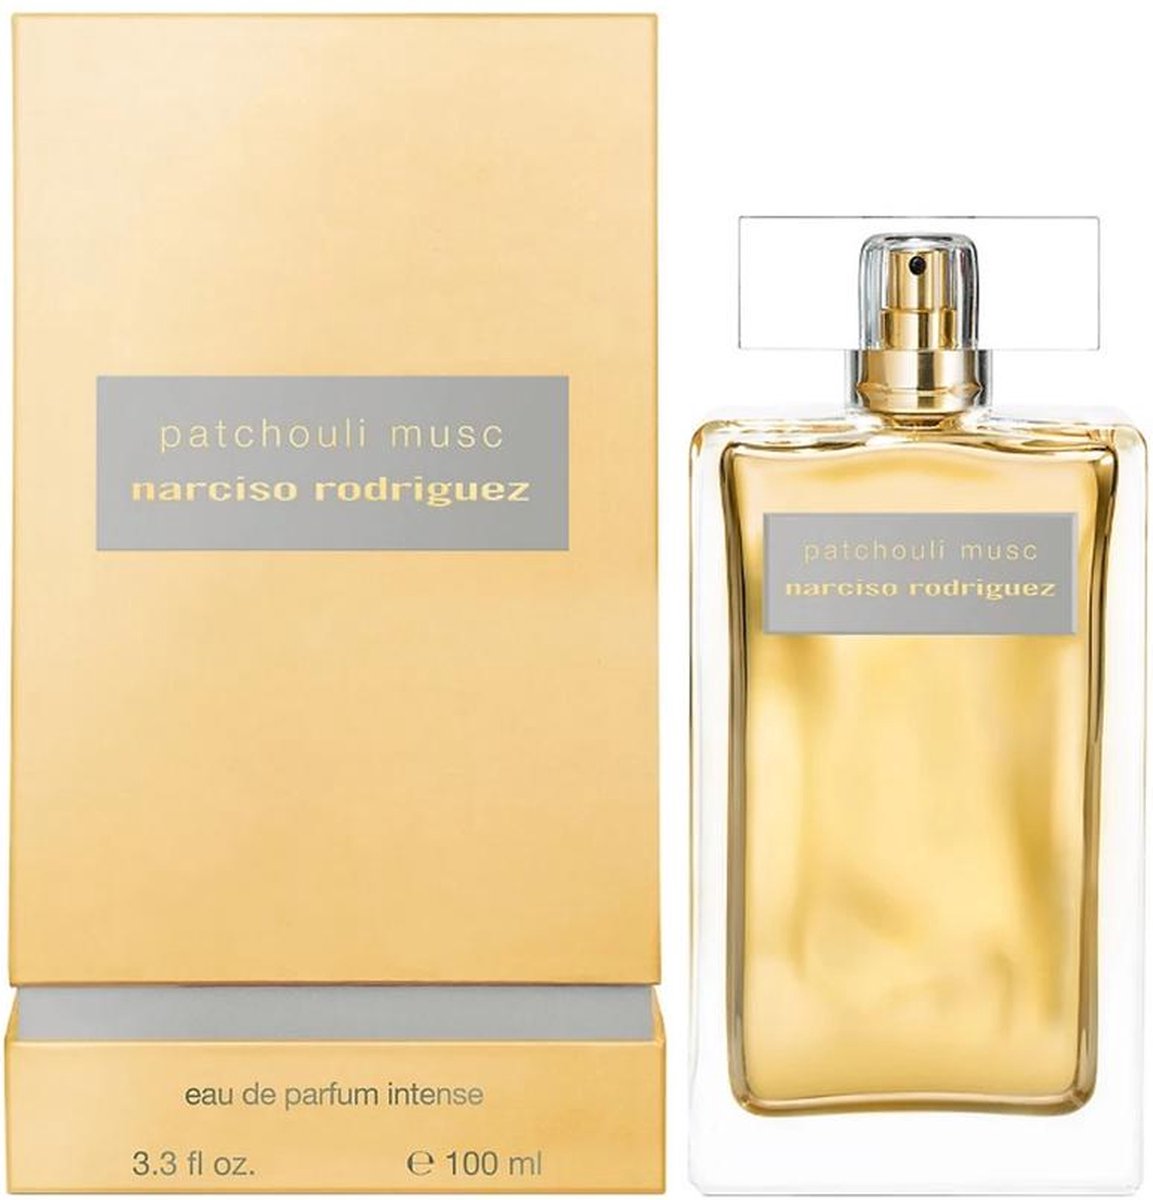 Narciso Rodriguez Patchouli Musc Intense - 100 ml - eau de parfum spray - damesparfum